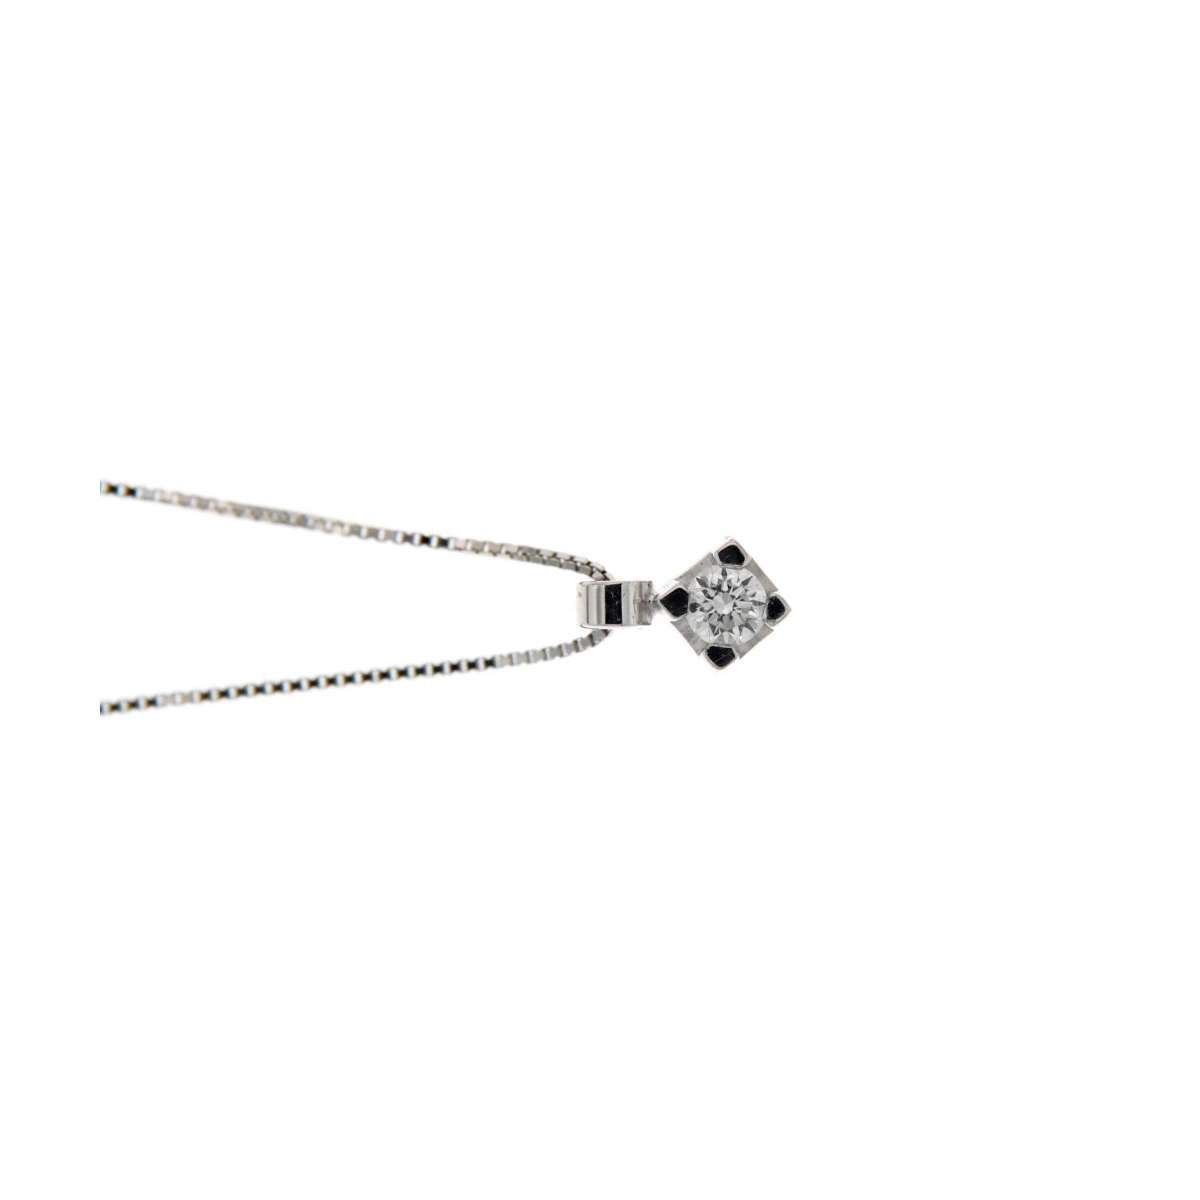 Solitaire necklace pendant carats diamond 0,07 G-VS1